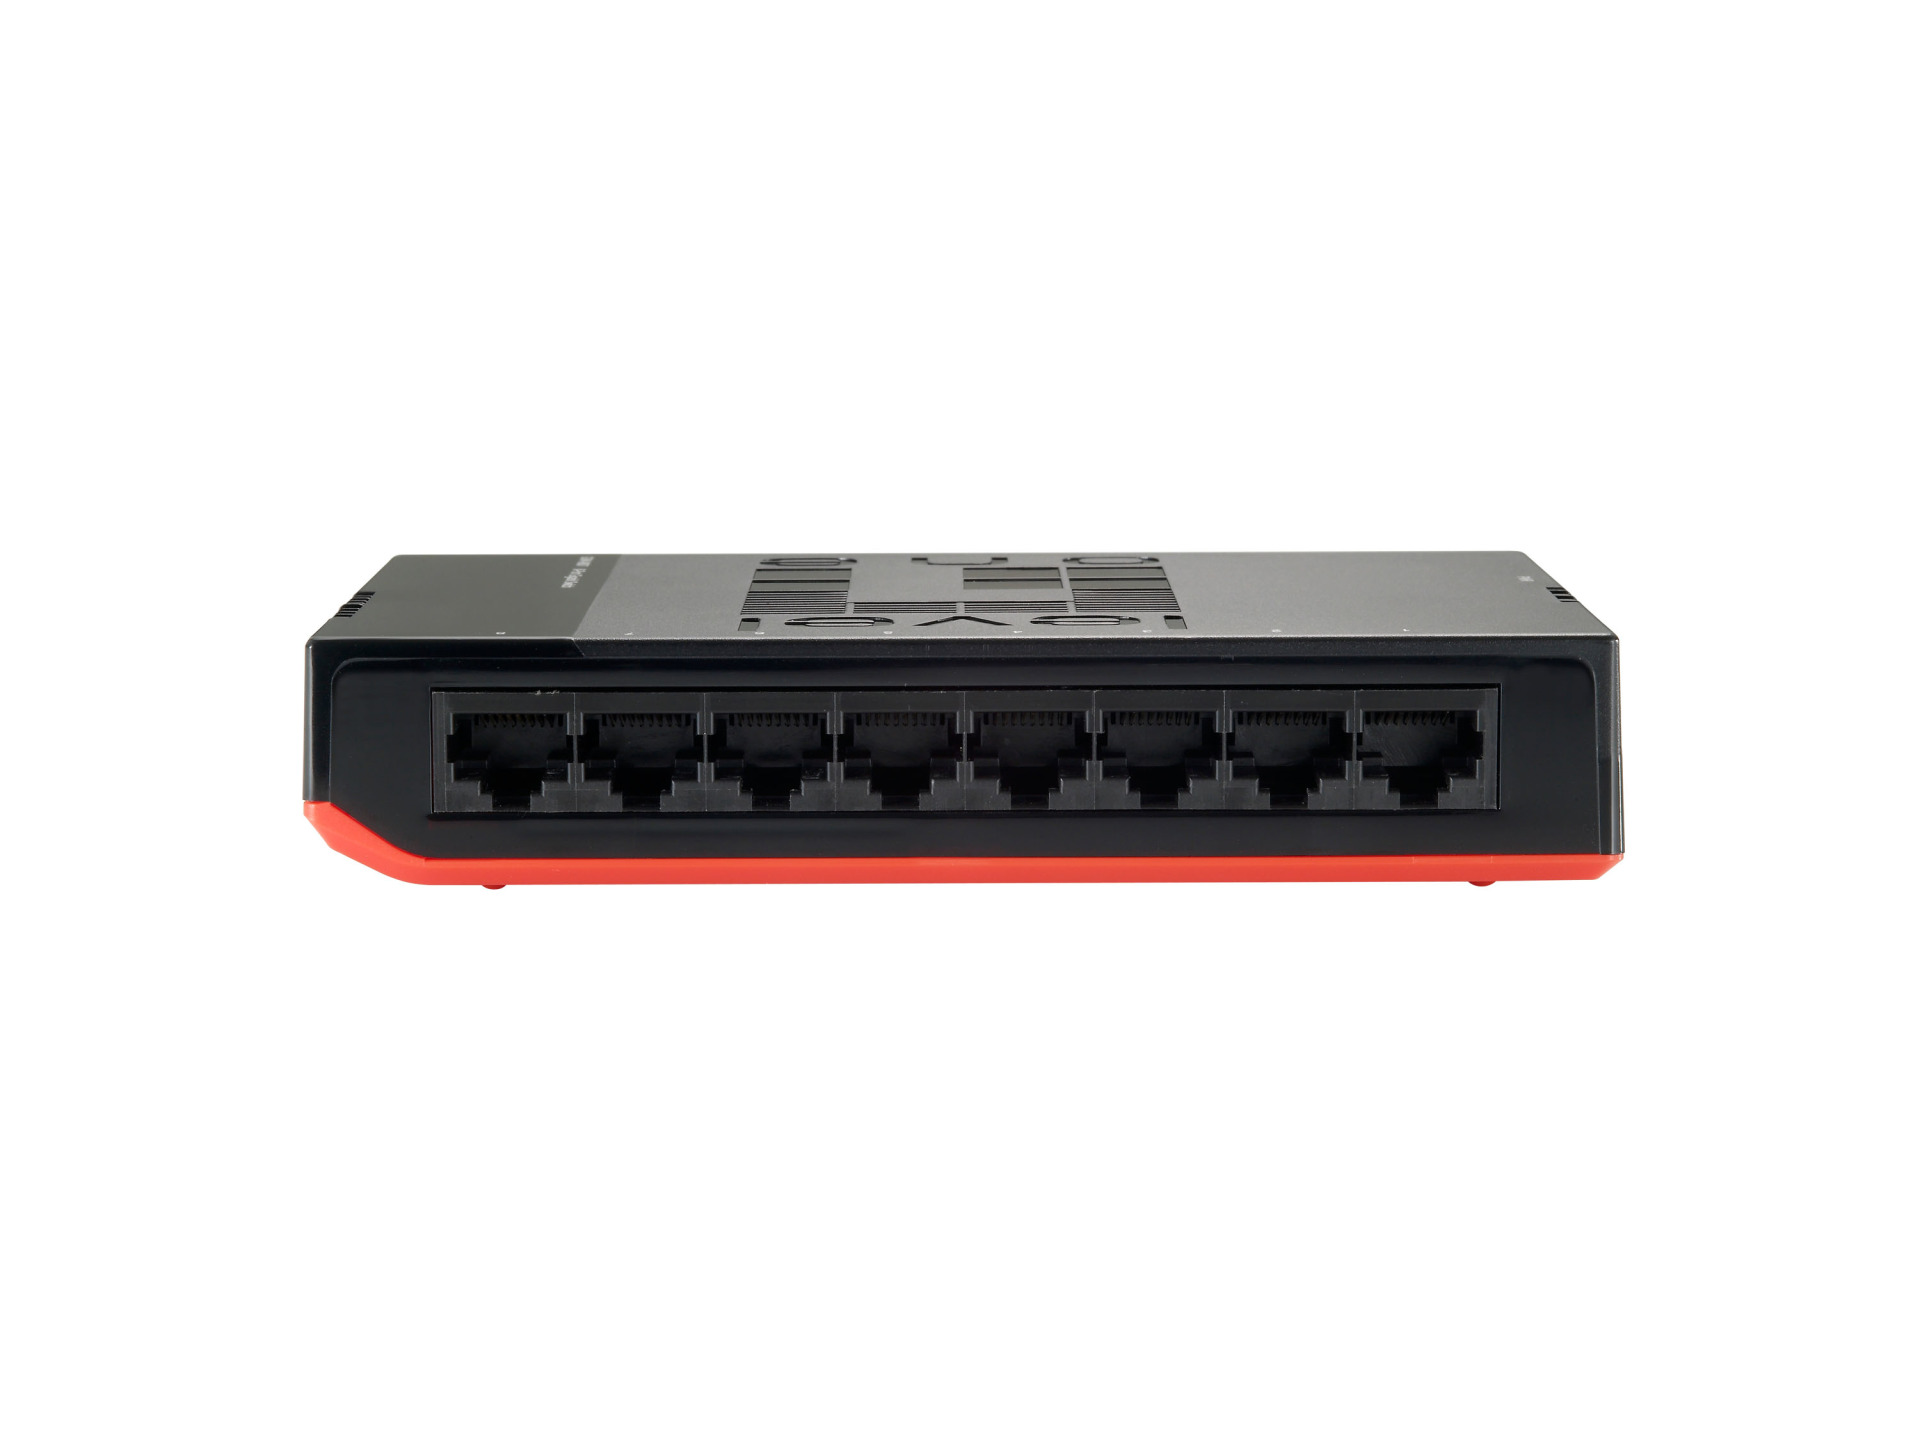 8-Port Gigabit Ethernet Desktop Switch "Black Edition"